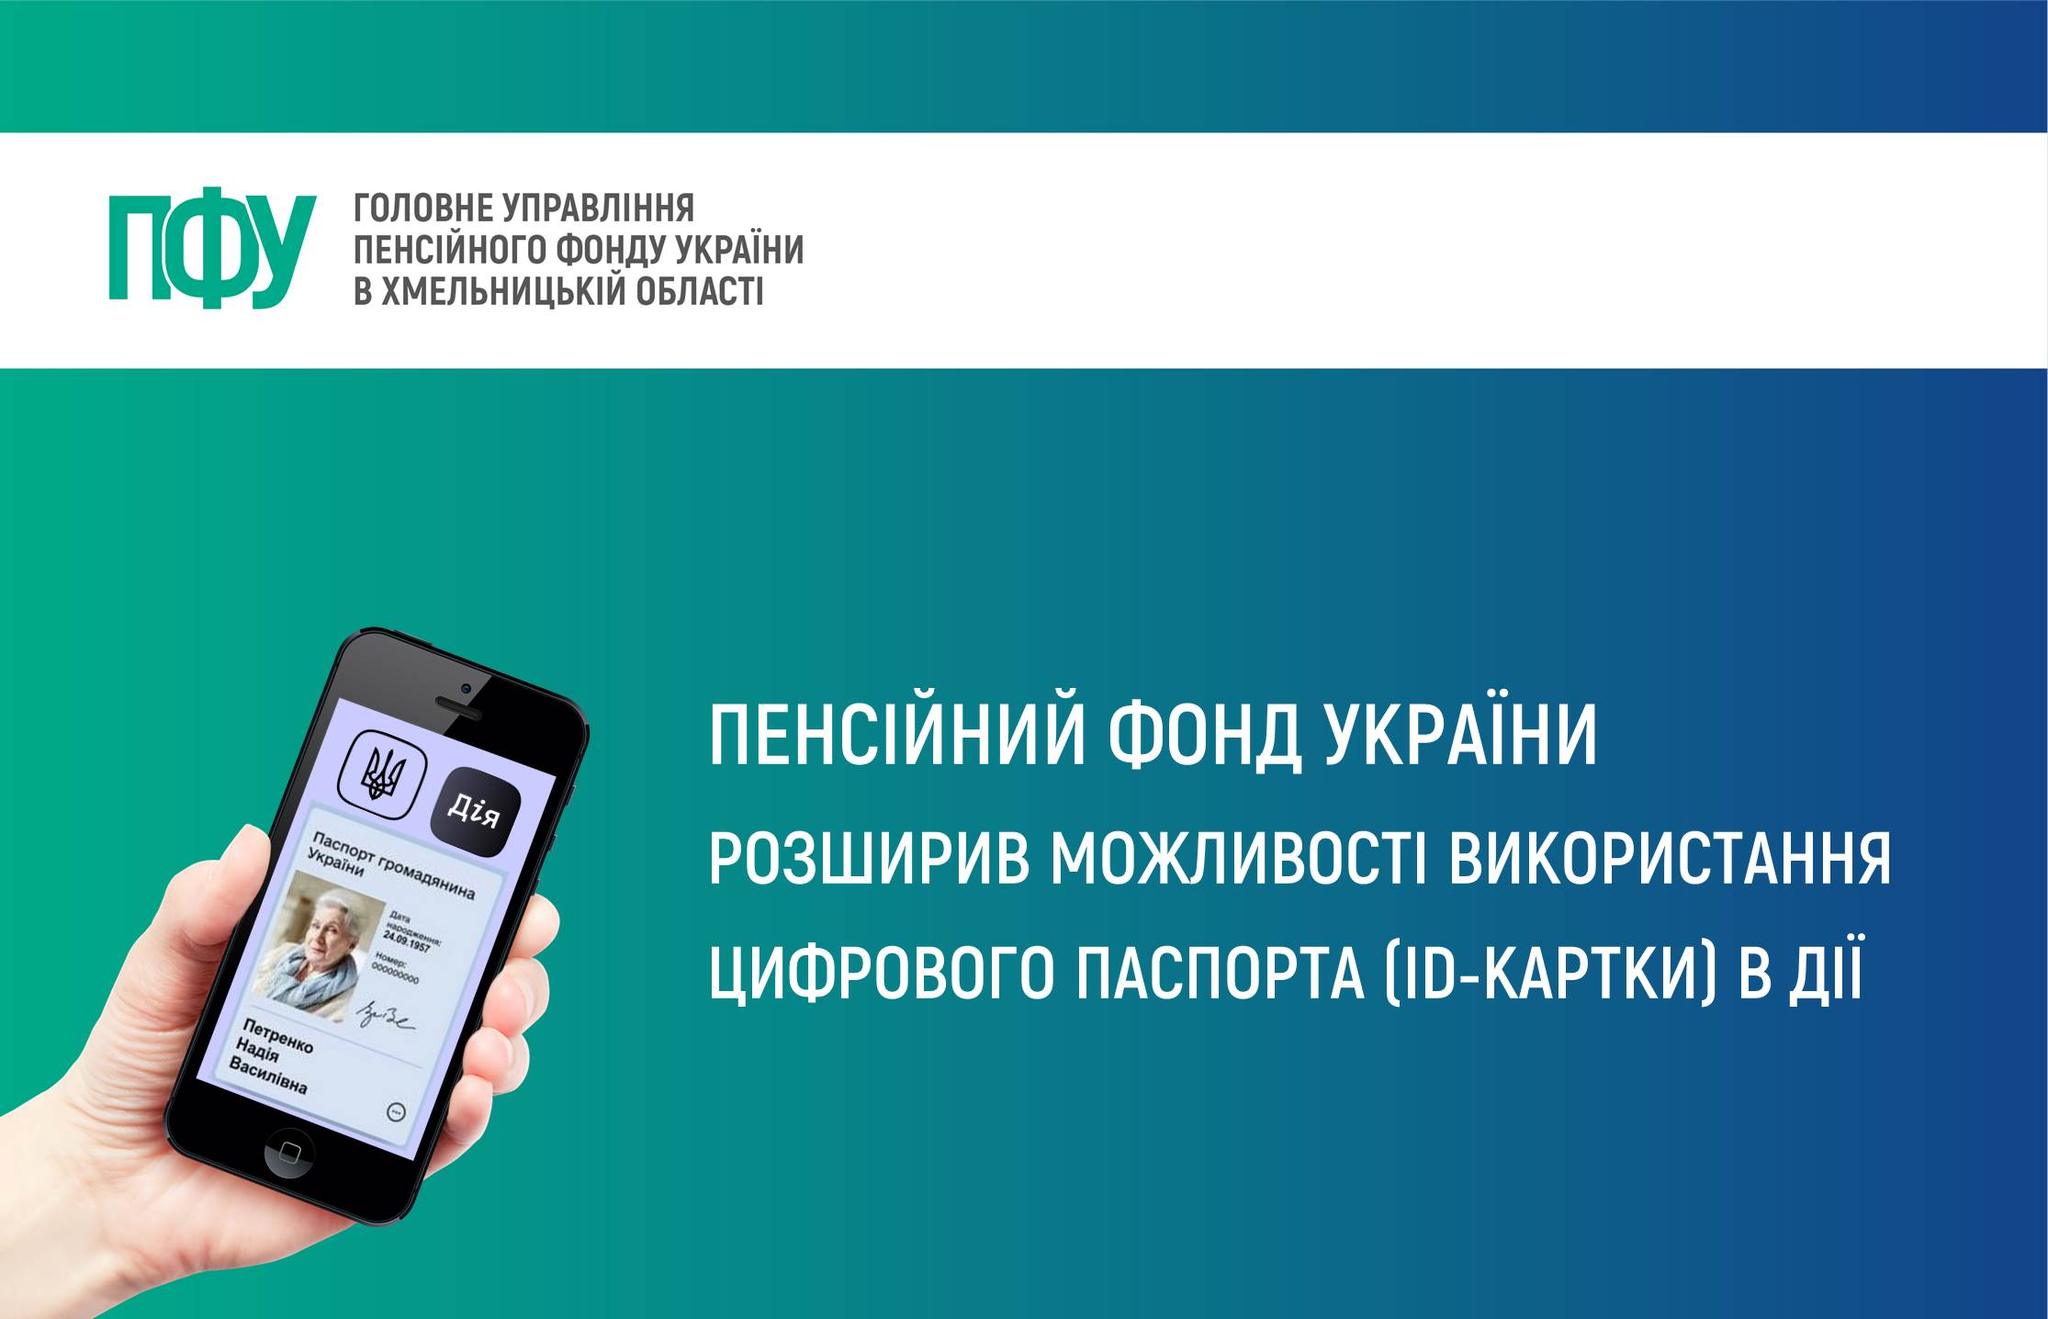 Пенсійний фонд України розширив можливості використання цифрового паспорта (ID-картки) в «Дії»